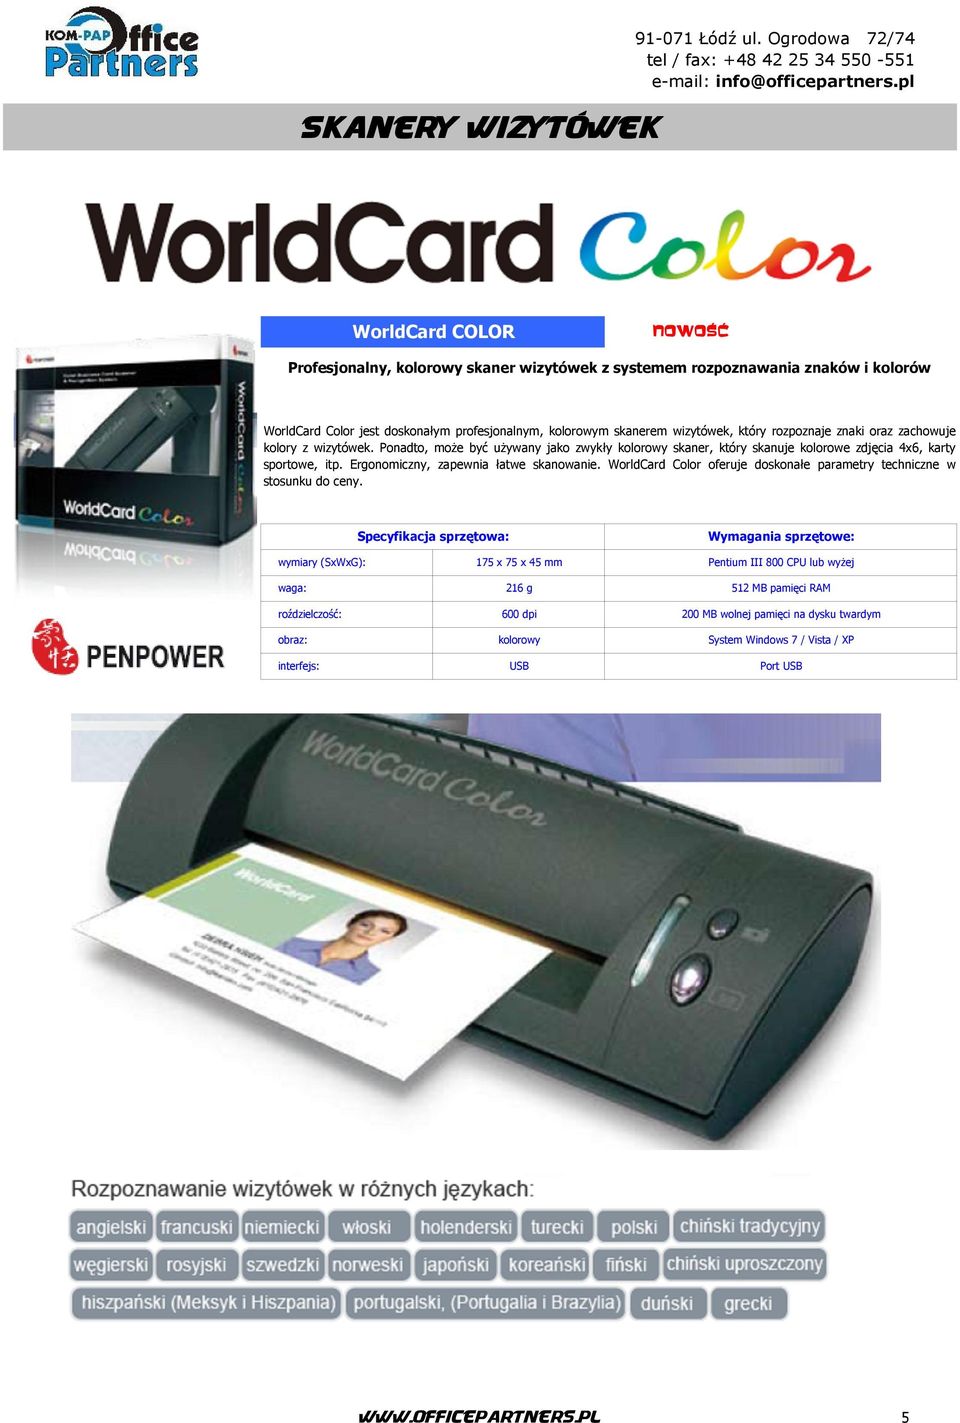 Ergonomiczny, zapewnia łatwe skanowanie. WorldCard Color oferuje doskonałe parametry techniczne w stosunku do ceny.